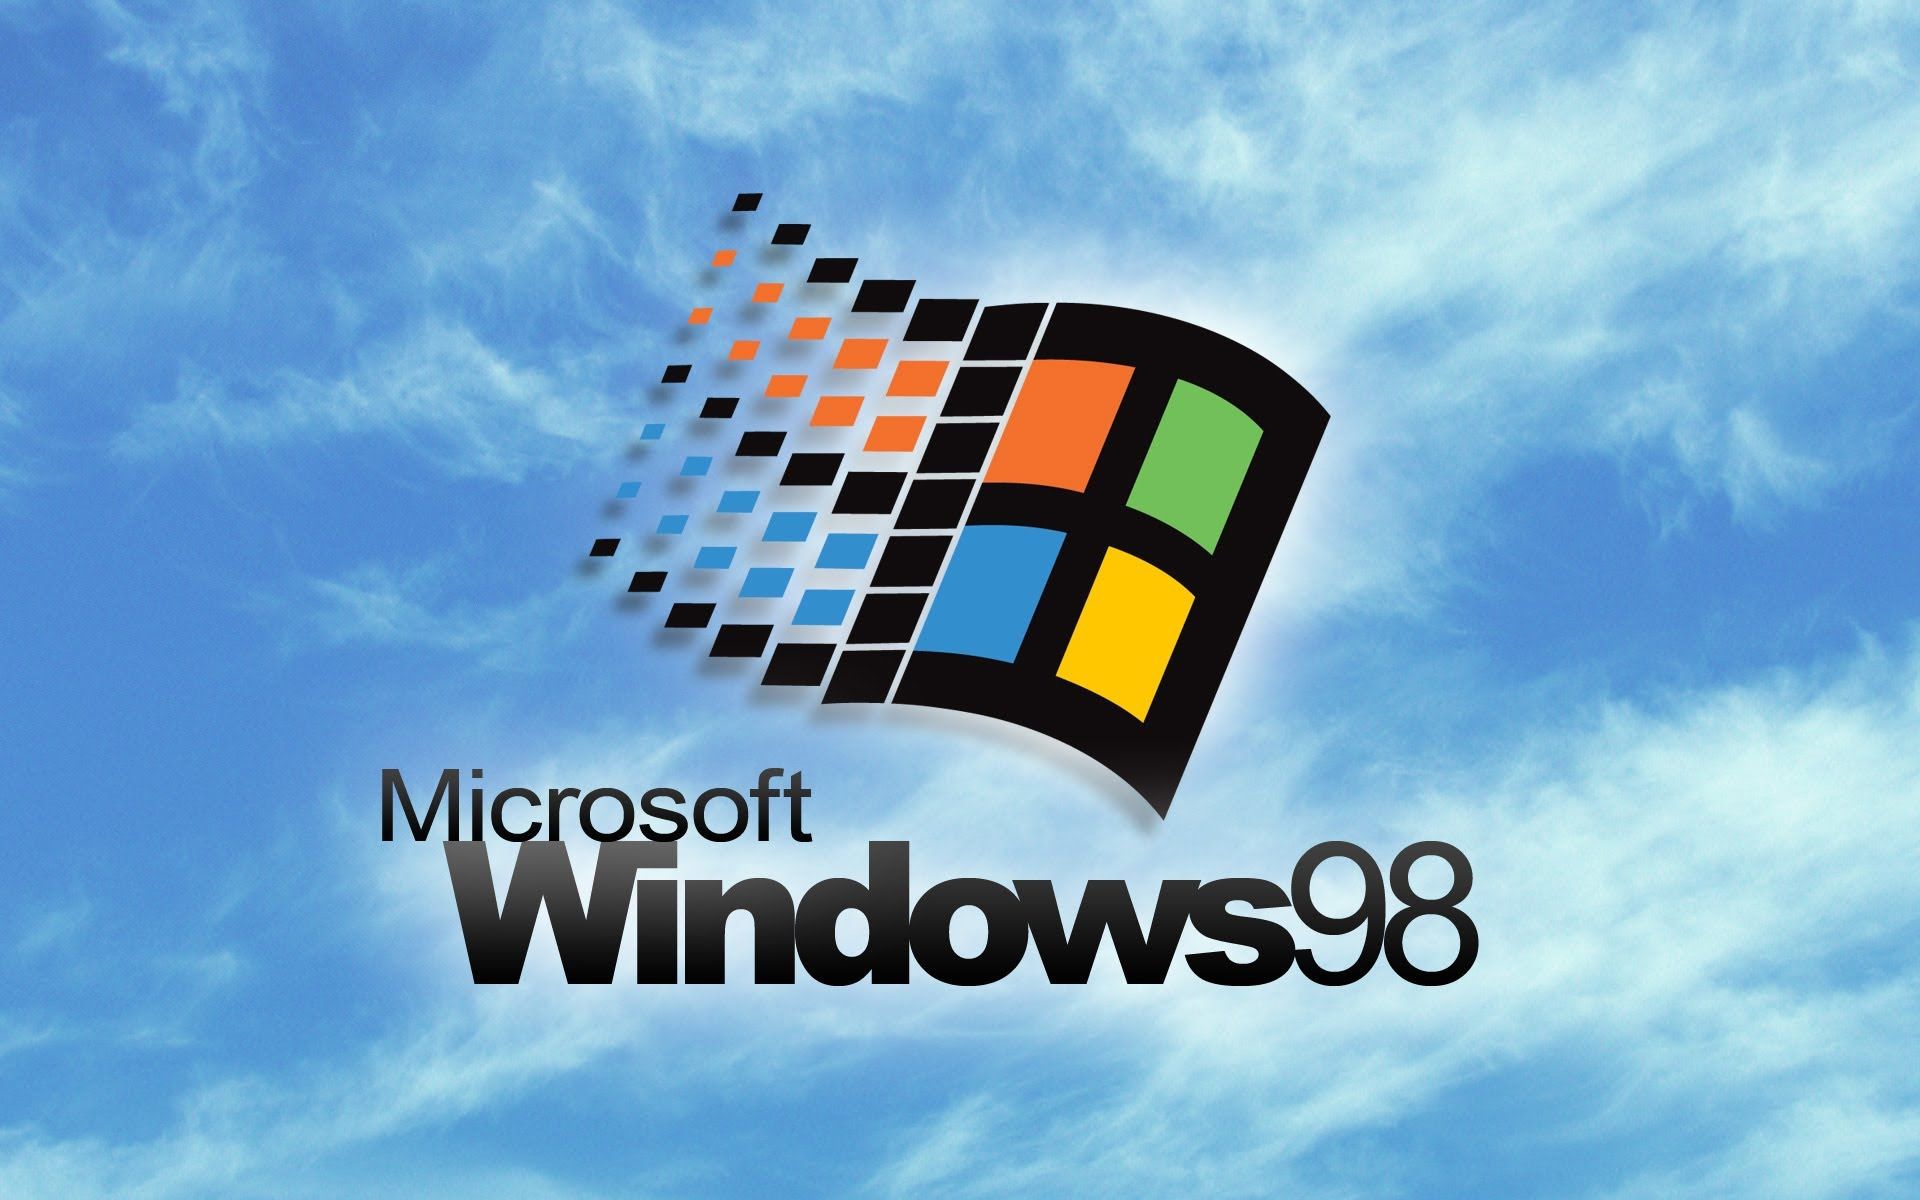 Cứu lại những ký ức của Windows 98 bằng những bản nhạc kịch hay. Nghe những giai điệu quen thuộc và tận hưởng bầu không khí mát xa cảm xúc tuyệt vời này. Nhắc lại ký ức của quá khứ trong khi tận hưởng khoảnh khắc của hiện tại, Windows 98 nhạc kịch sẽ mang lại cho bạn cảm giác thư giãn và tiếp thêm năng lượng.